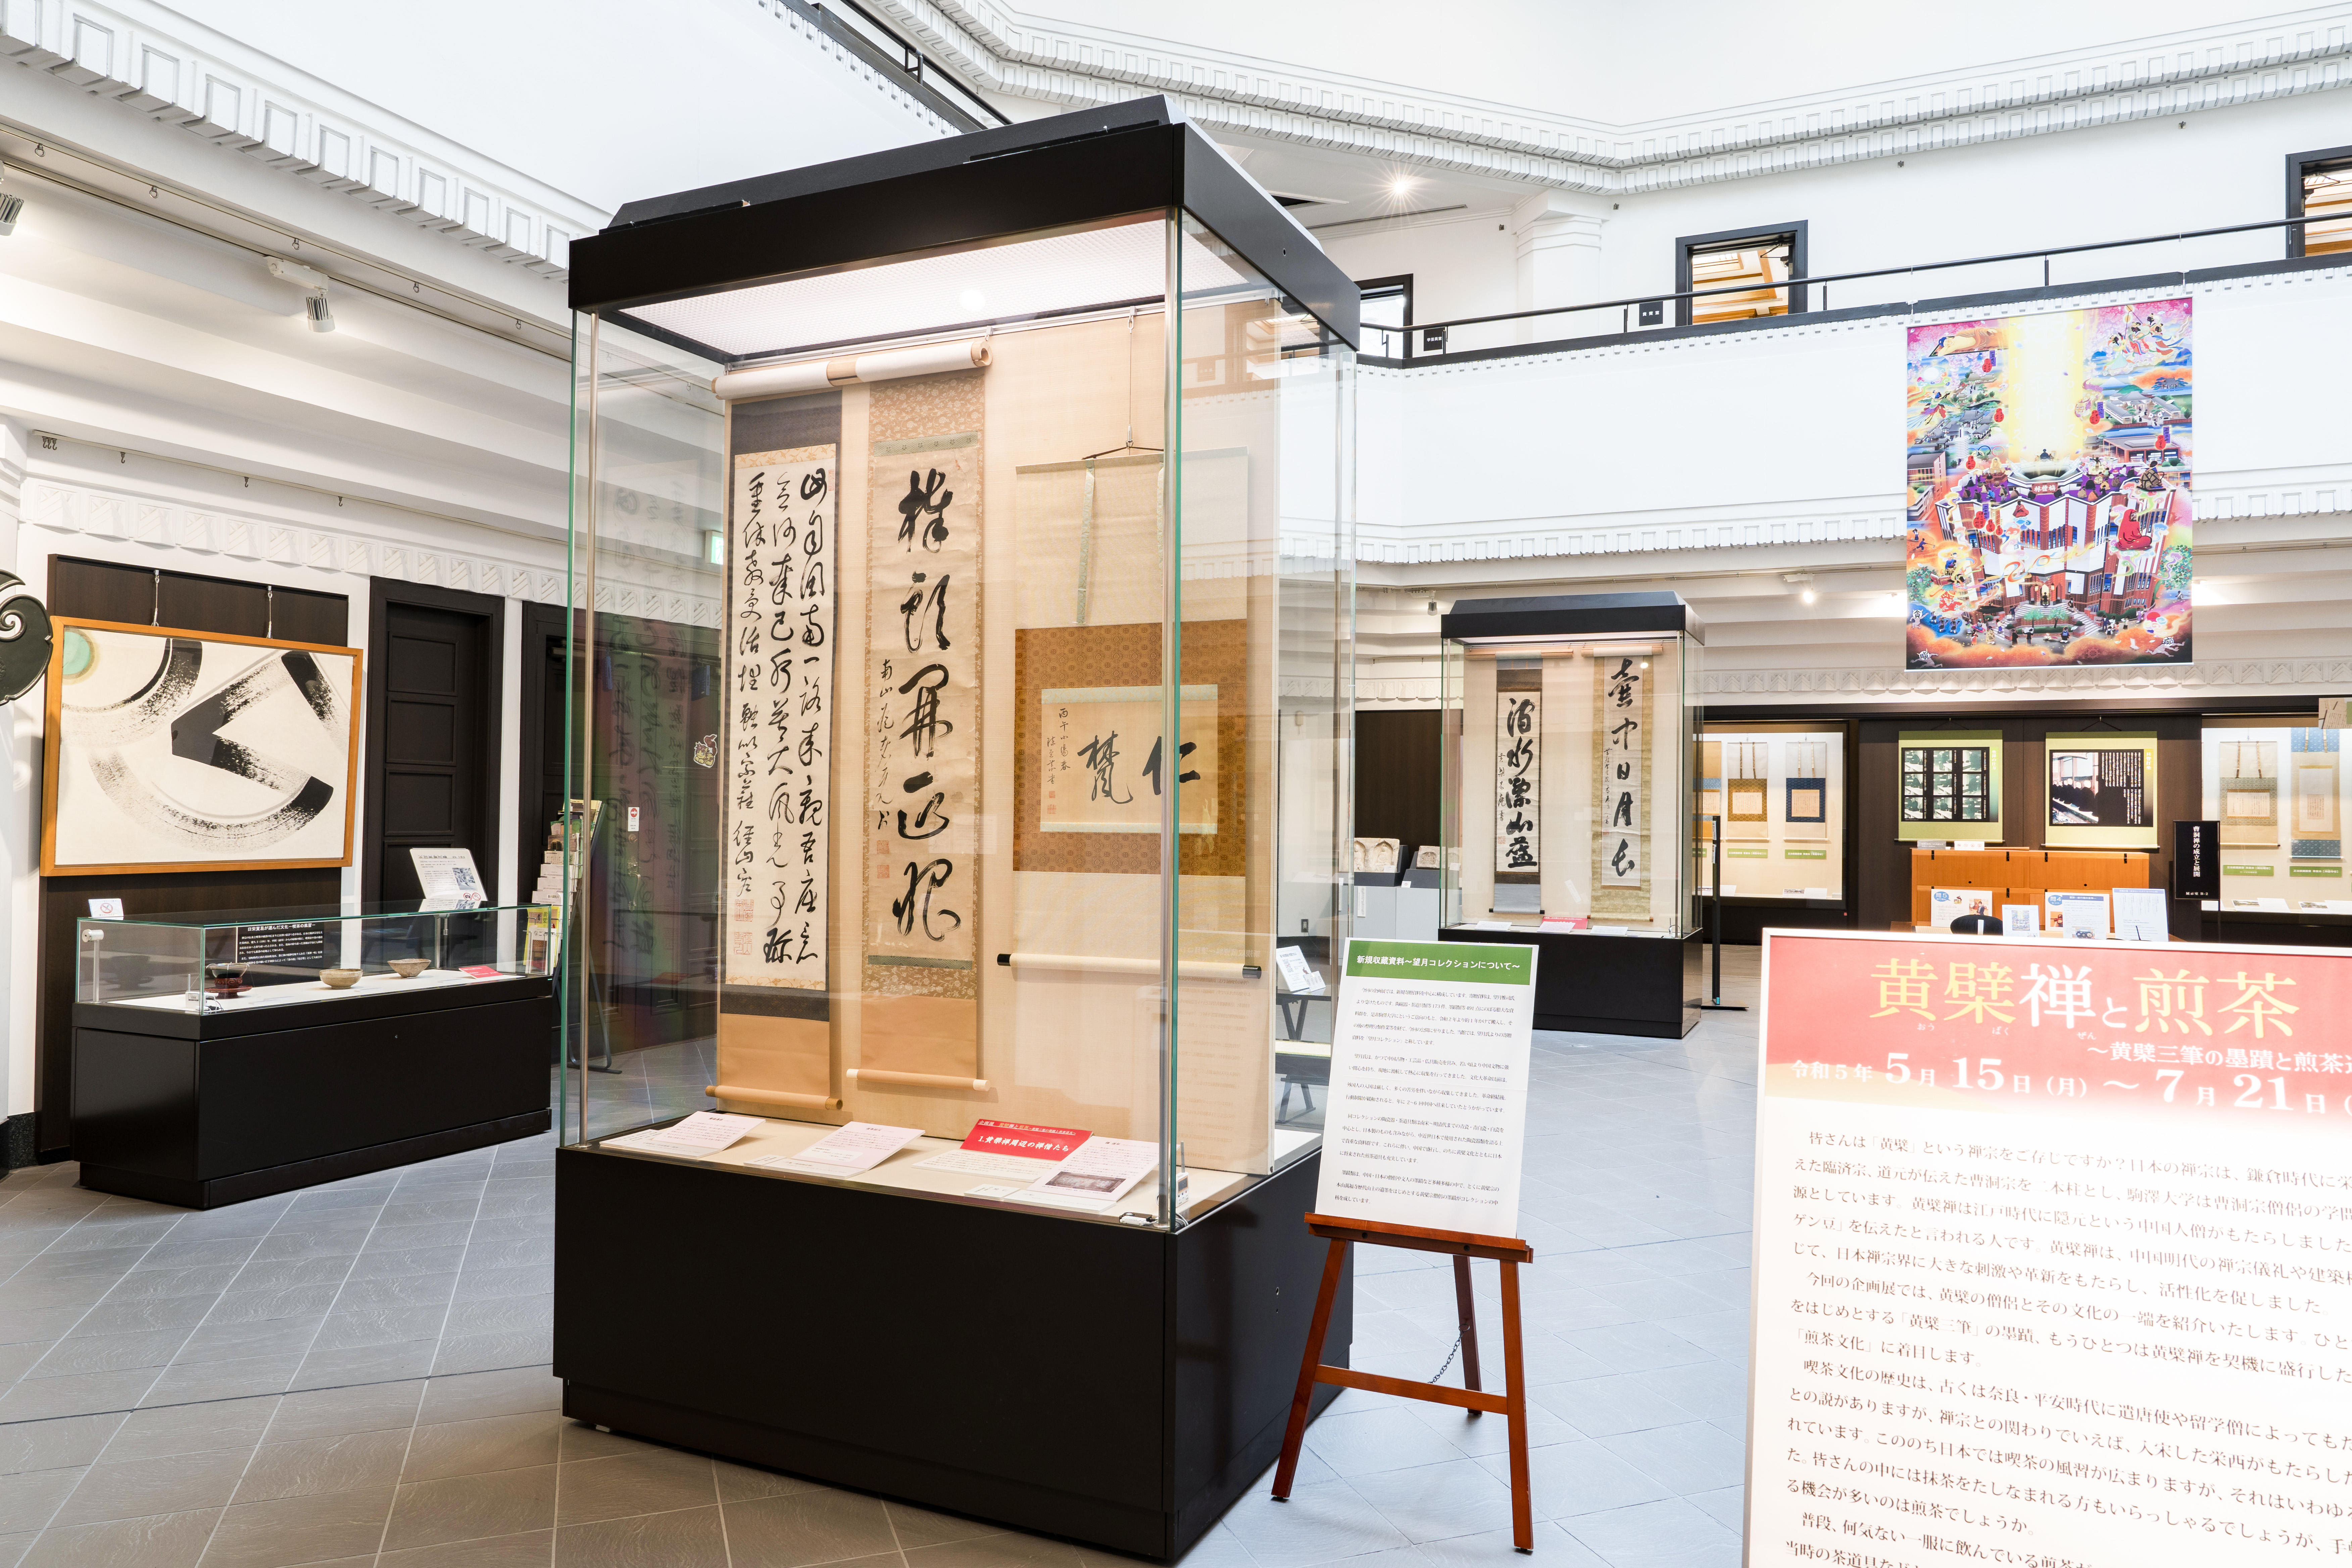 駒澤大学禅文化歴史博物館が7月21日まで企画展「黄檗禅と煎茶 ～黄檗三筆の墨蹟と煎茶道具～」を開催中 -- 6月17日には関連セミナーも